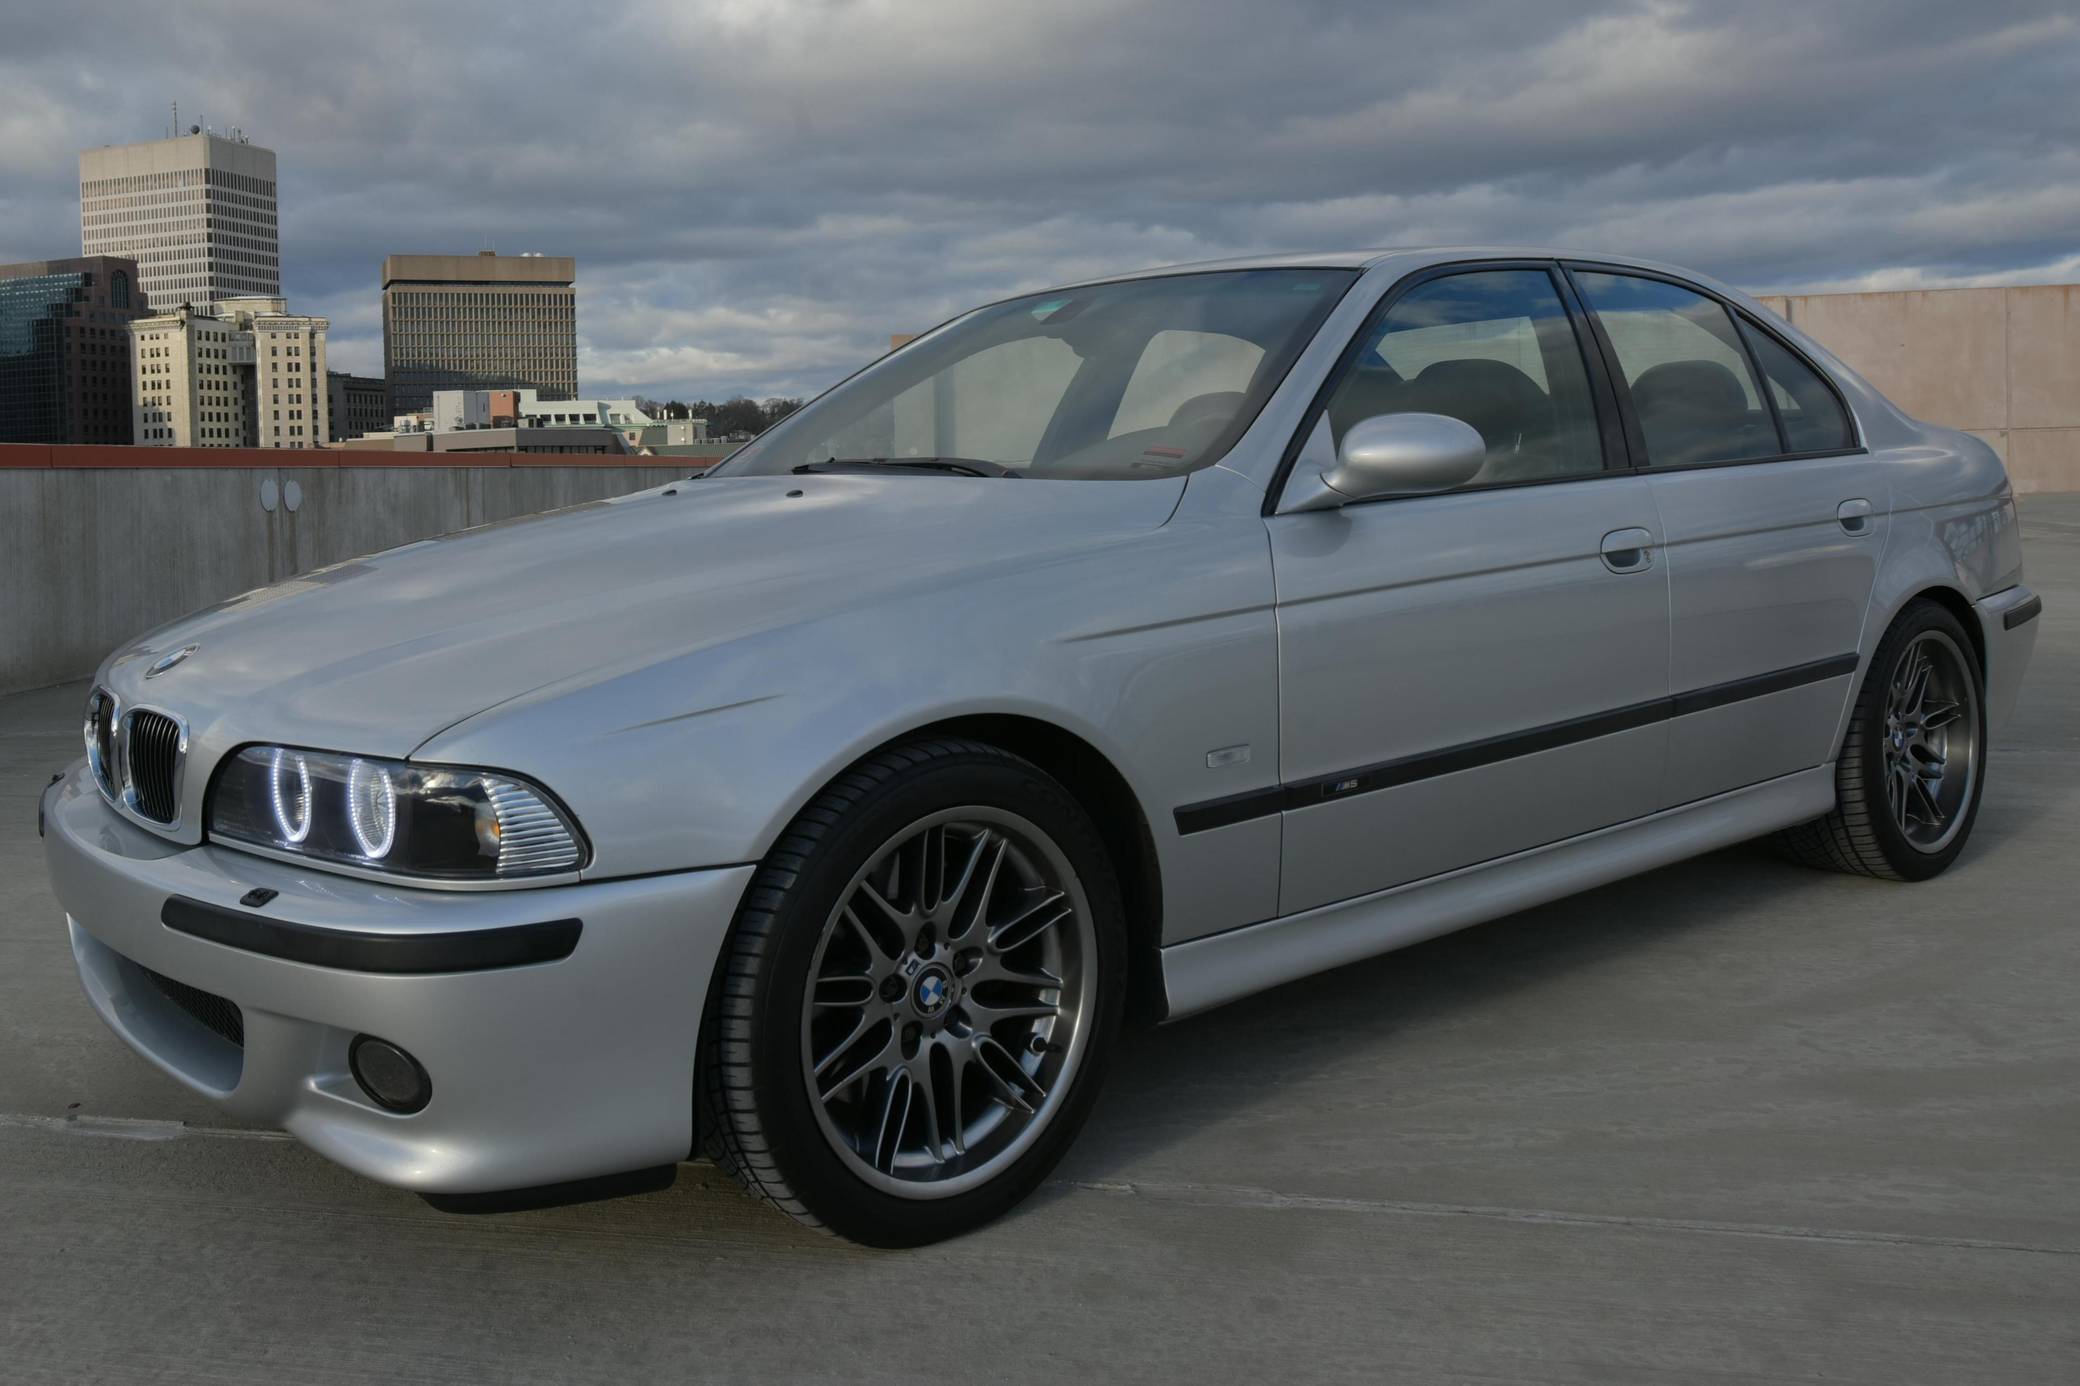 BMW E39 M5 – The V8 Bimmer We All Longed For –